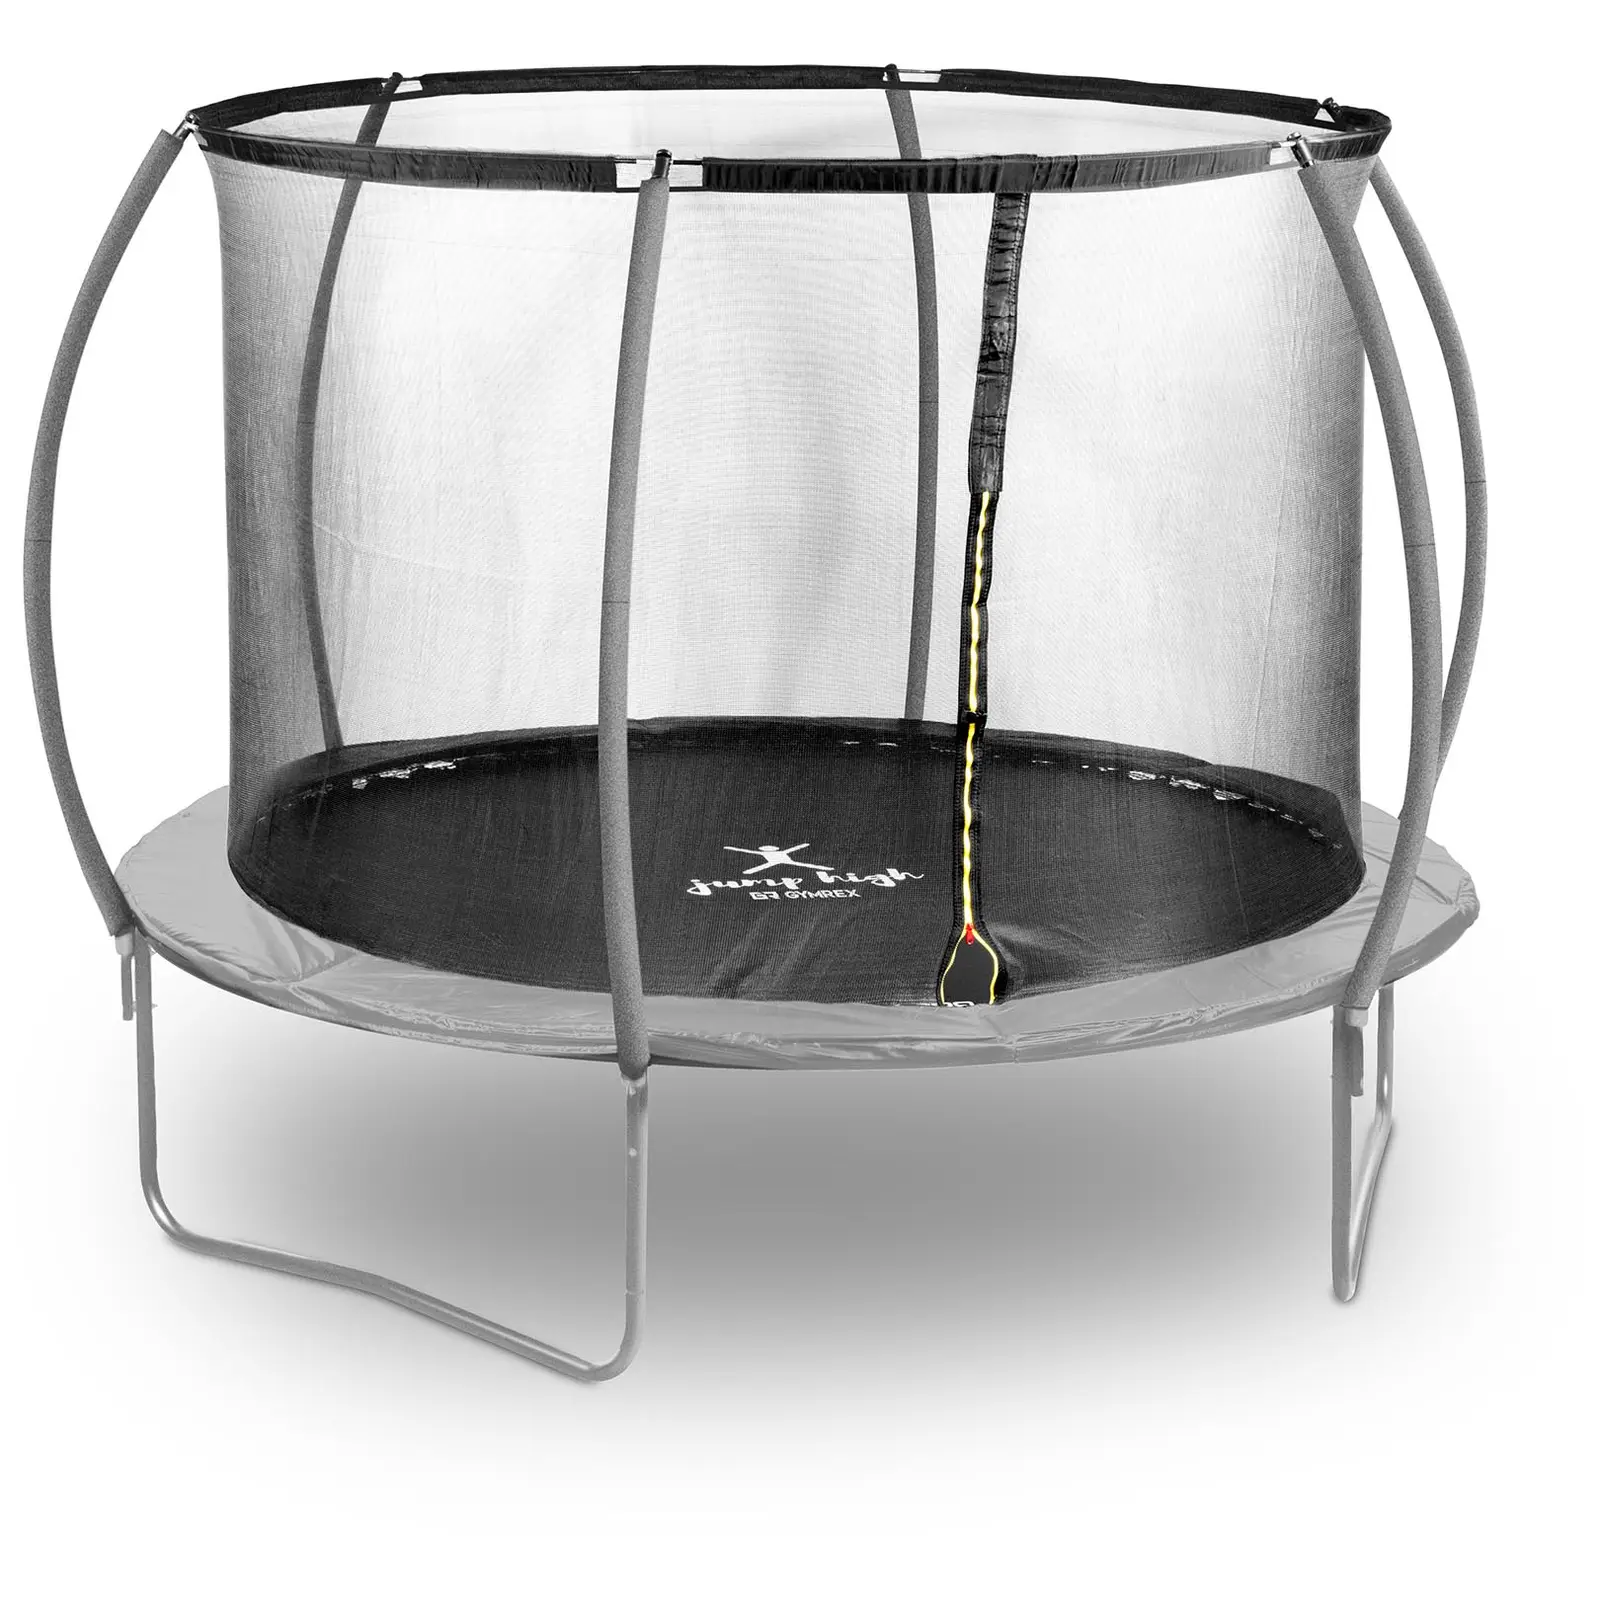 Trampoline de jardin - Ø 305 x 180 cm - 100 kg - Filet de sécurité - Noir/gris